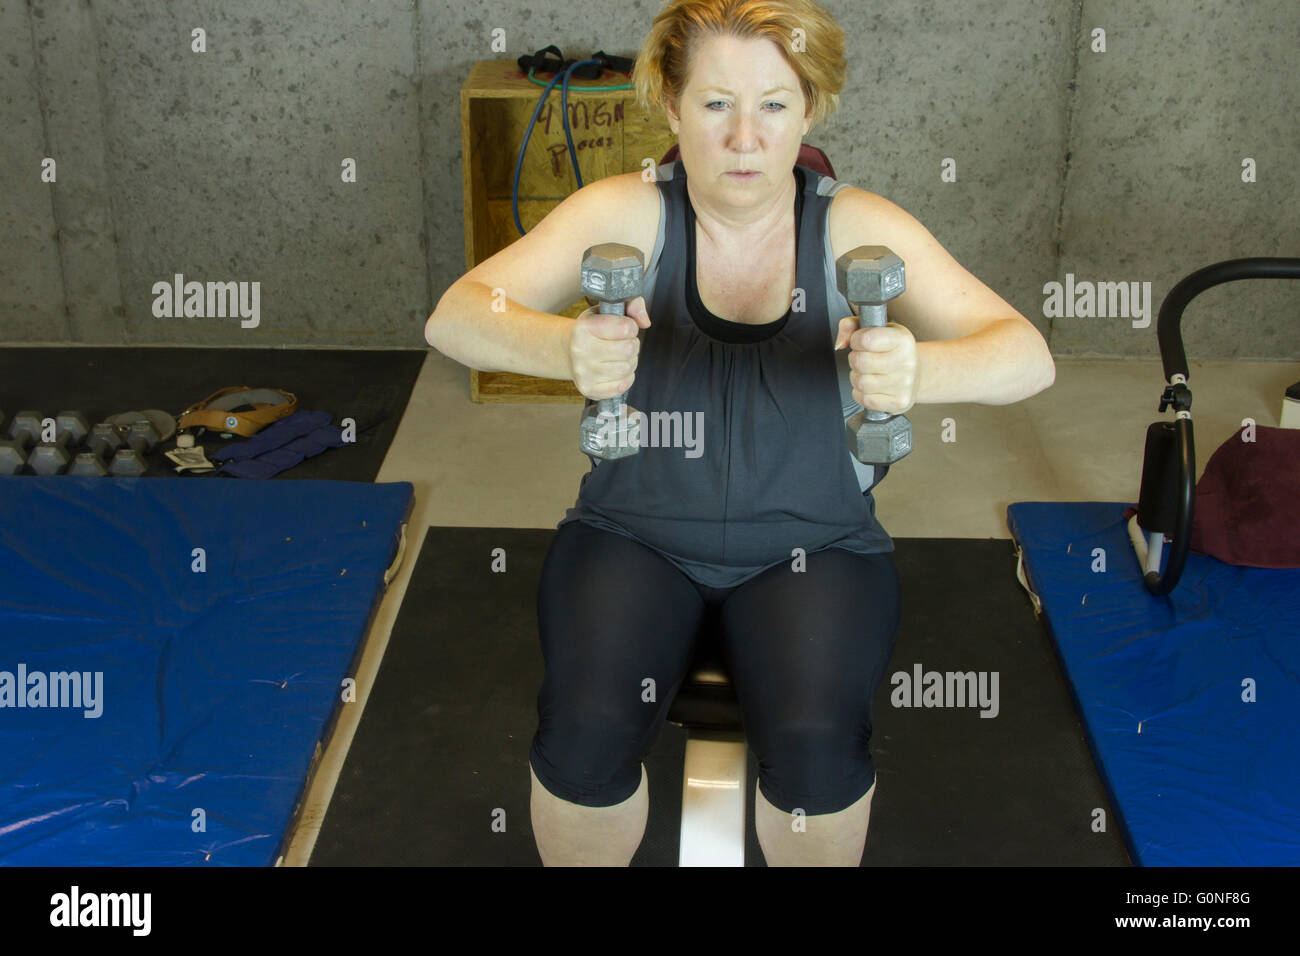 Reife Frau im Keller Fitnessraum mit Gewichten an Armen. Stockfoto